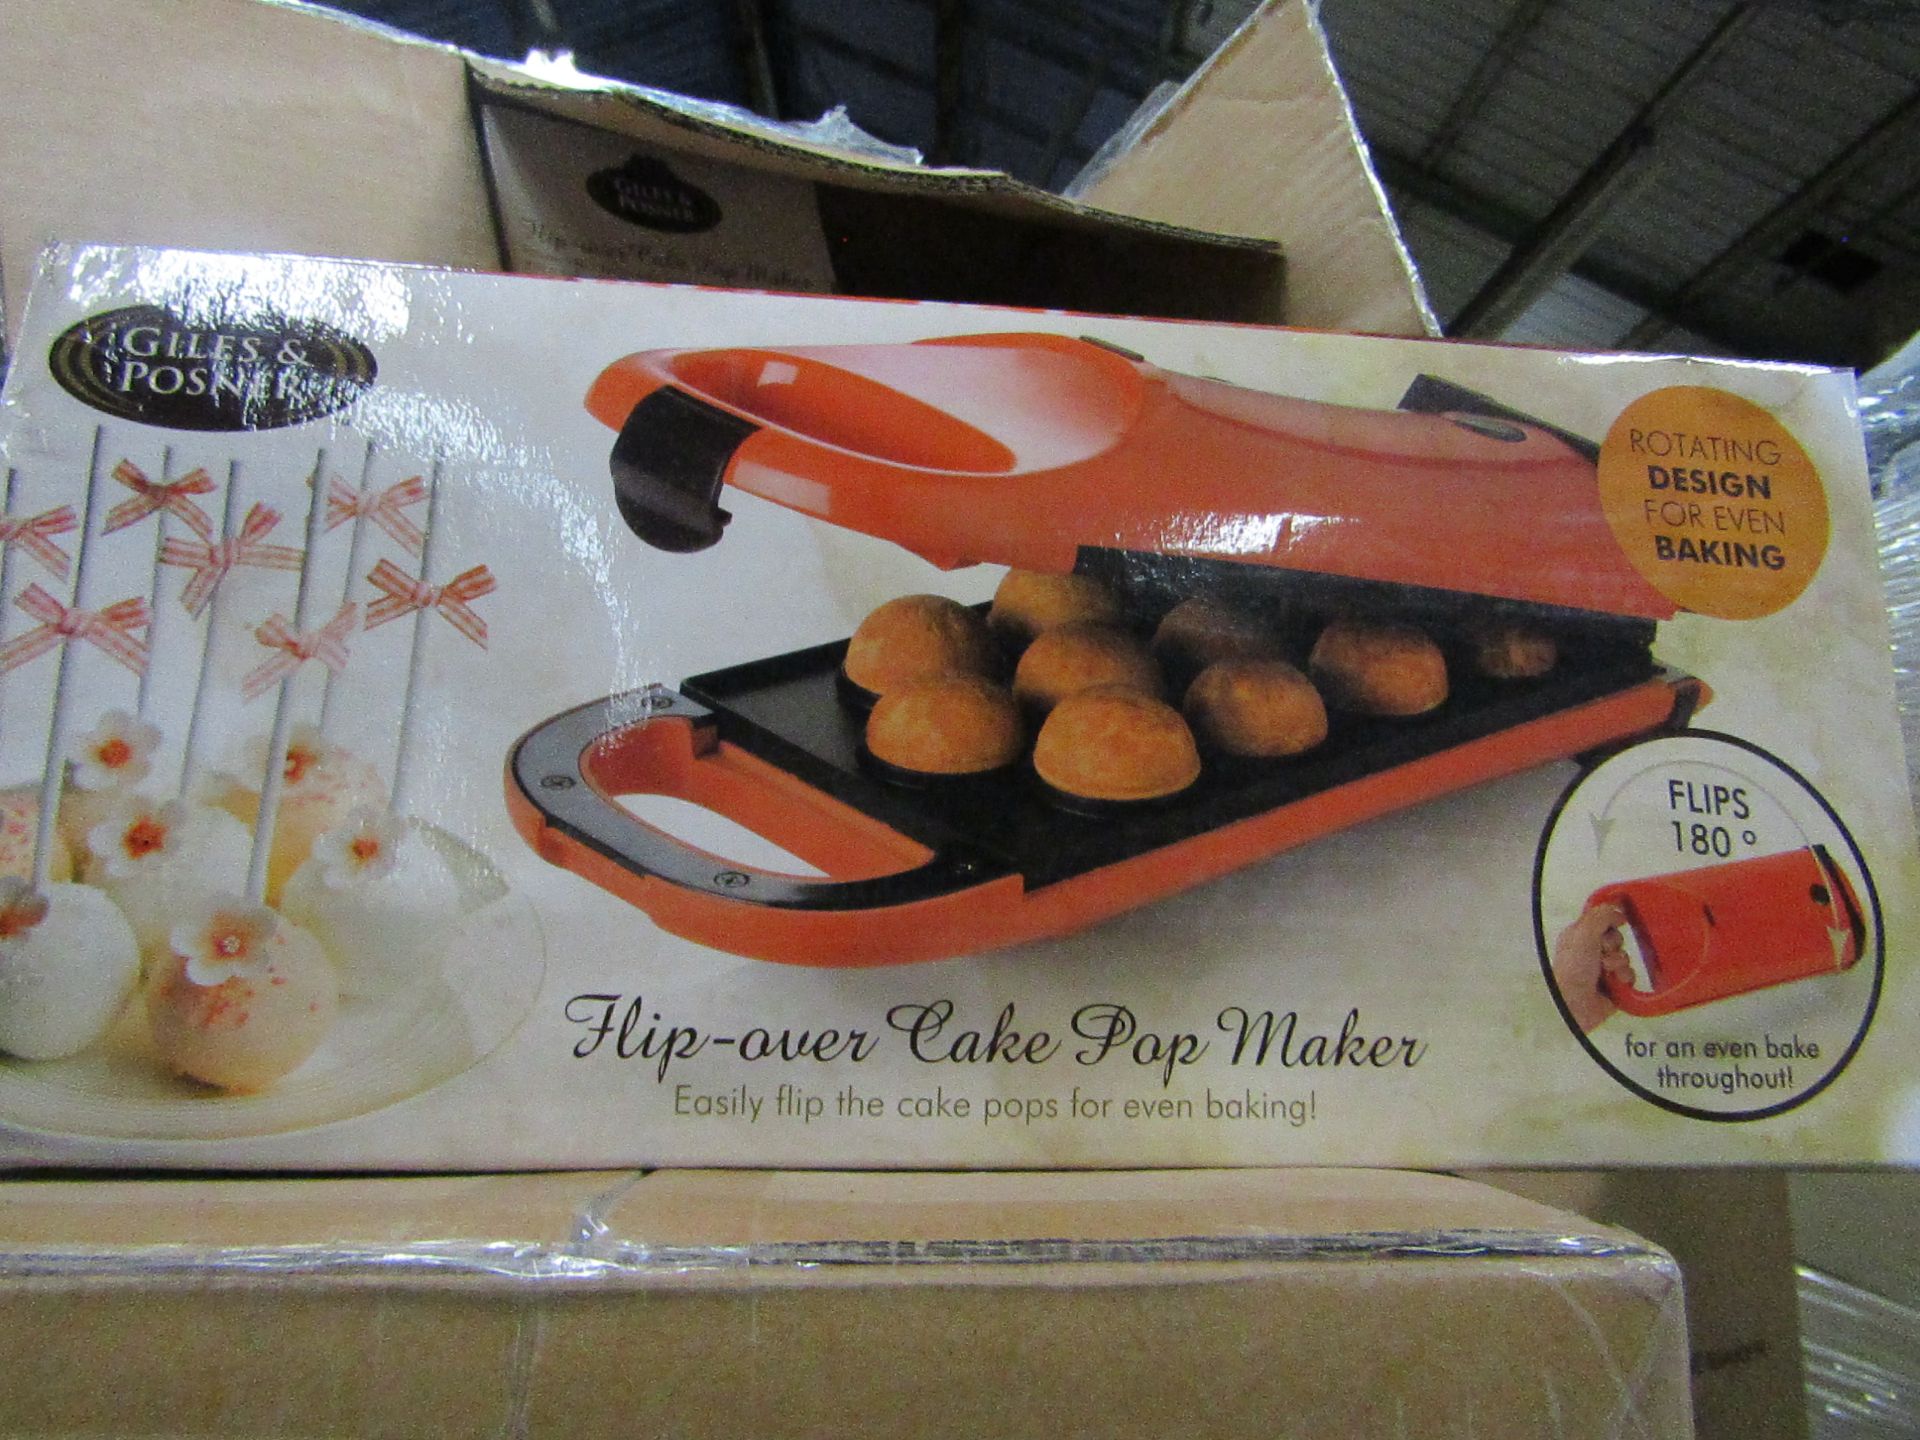 4x Giles & Posner - Flip-Oven Cake Pop Maker - new & Boxed